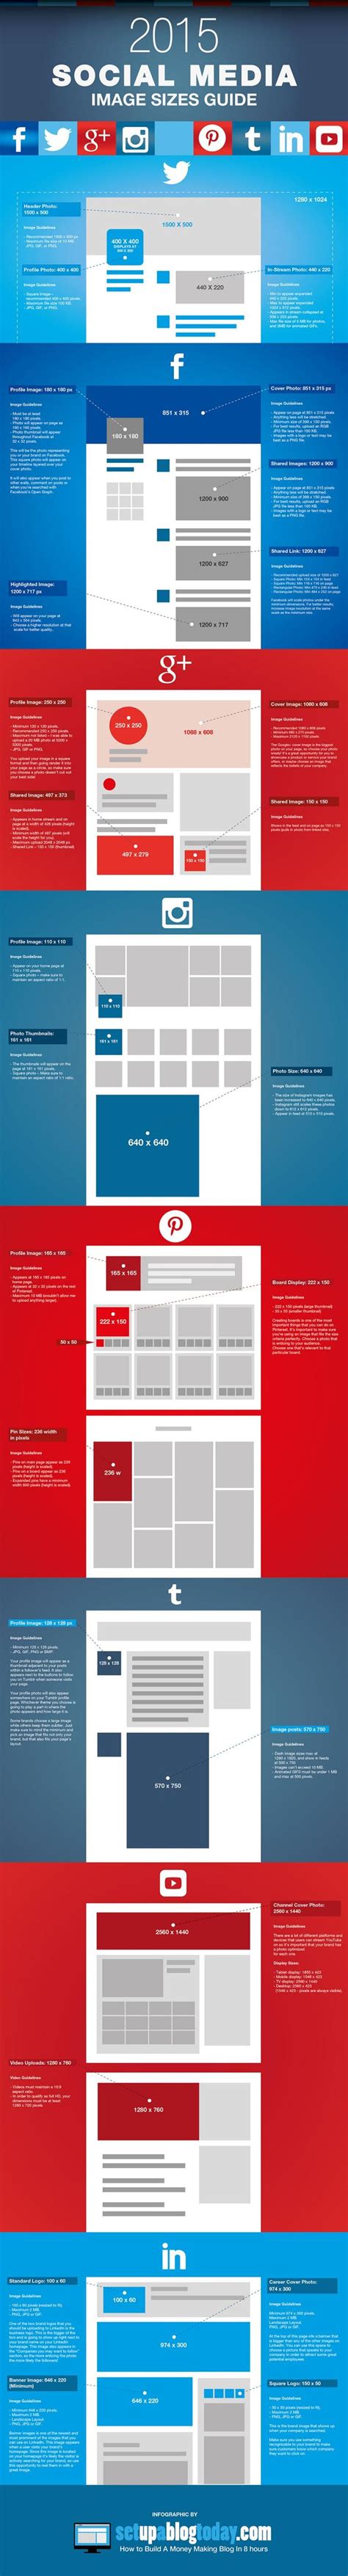 Infografía: Medidas de imágenes para redes sociales